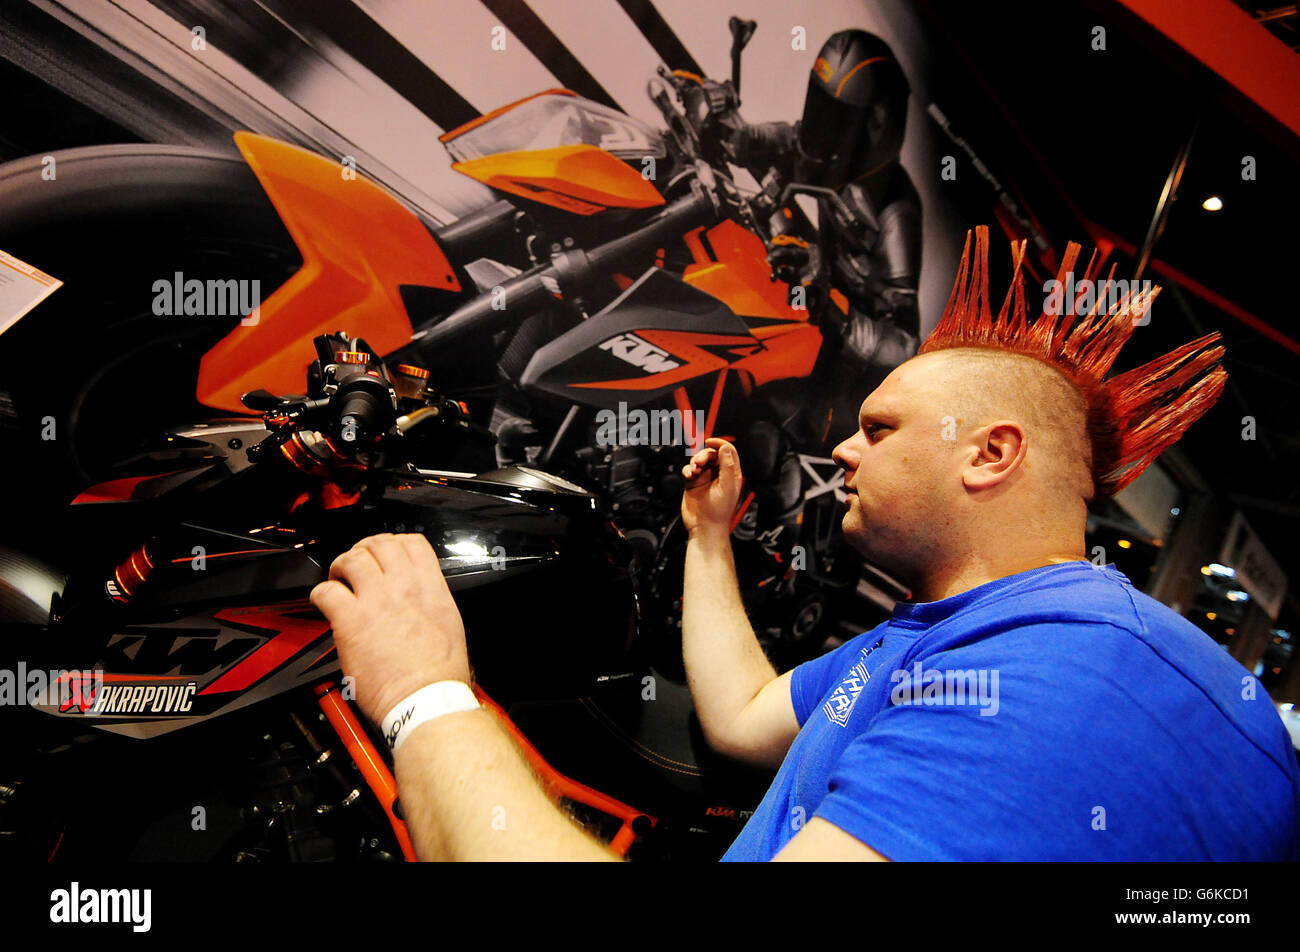 Nick Dean aus Wiltshire schaut sich ein KTM Bike während eines Besuchs auf dem Motorcycle Live 2013, NEC, Birmingham an. Stockfoto